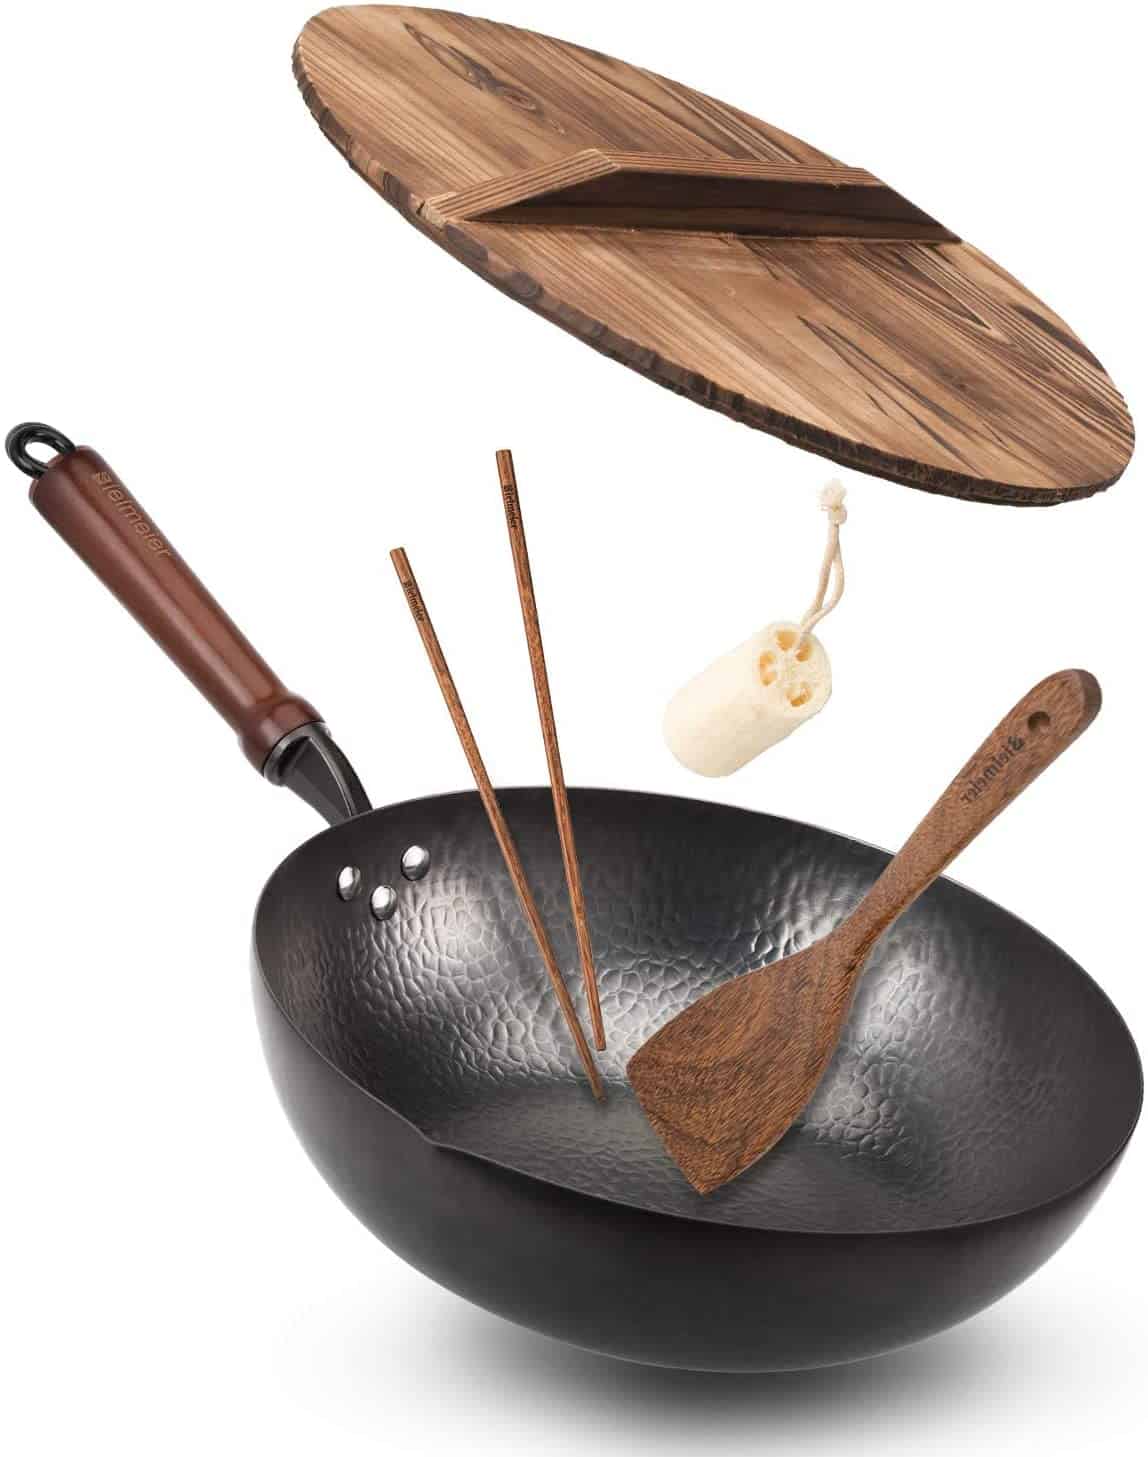 Melhor wok de aço carbono com fundo plano e melhor com tampa e melhor forno para forno - Bielmeier Wok Pan